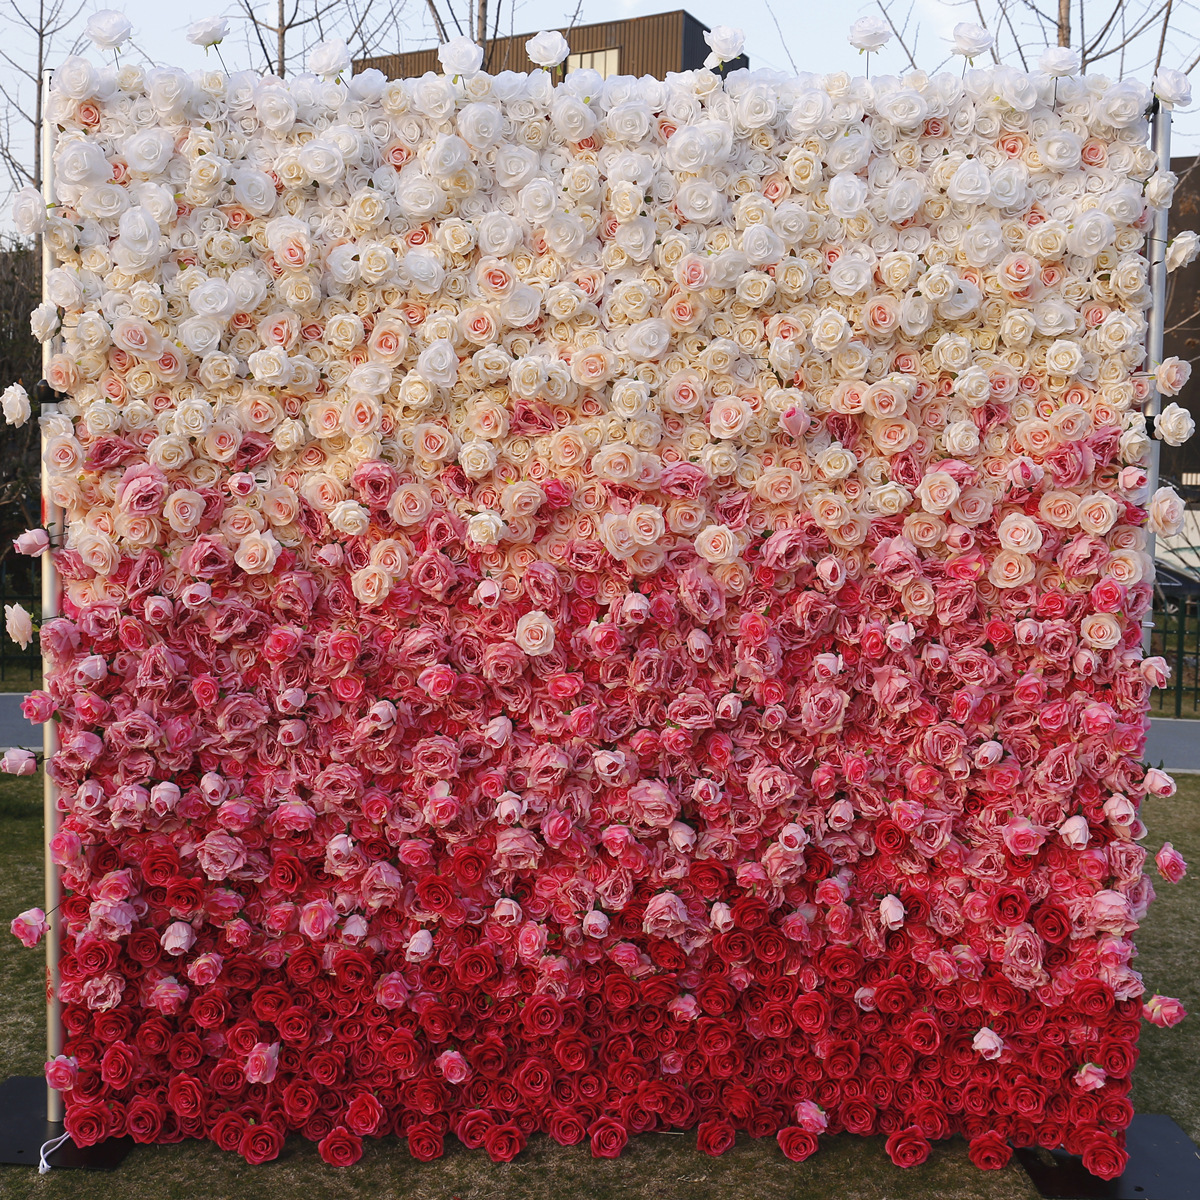 5D симуляція дна тканини квітка стіна фон стіни градієнт кольору висока щільність висотних вторинних весільних прикрас